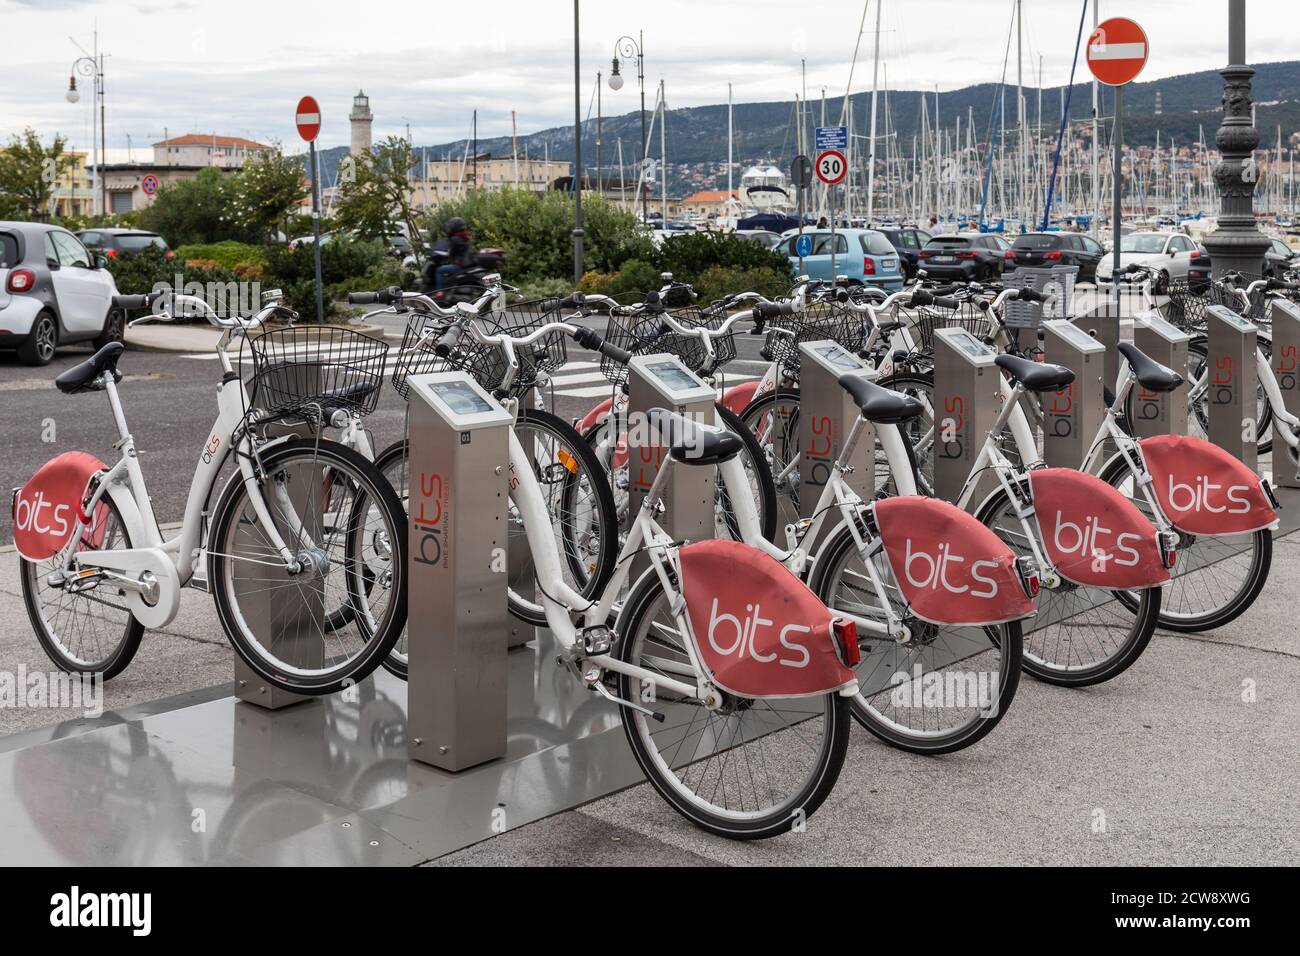 Vélo en partage Trieste, terminal de vélo en libre-service - Trieste, Italie Banque D'Images